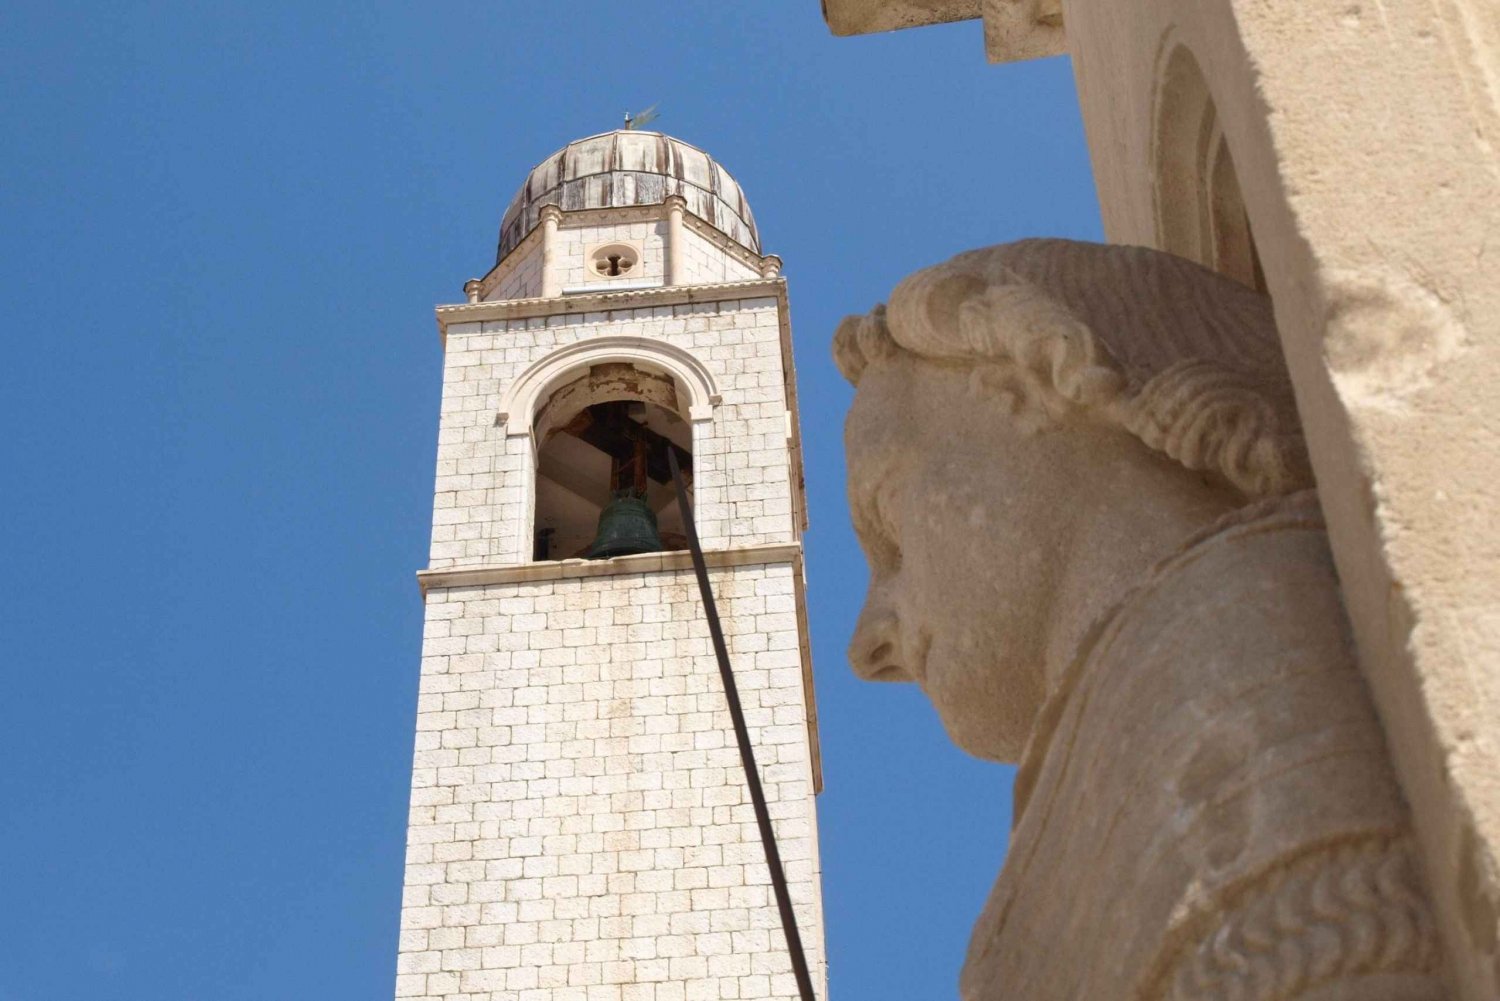 Dubrovnik: Byvandring i gamlebyen